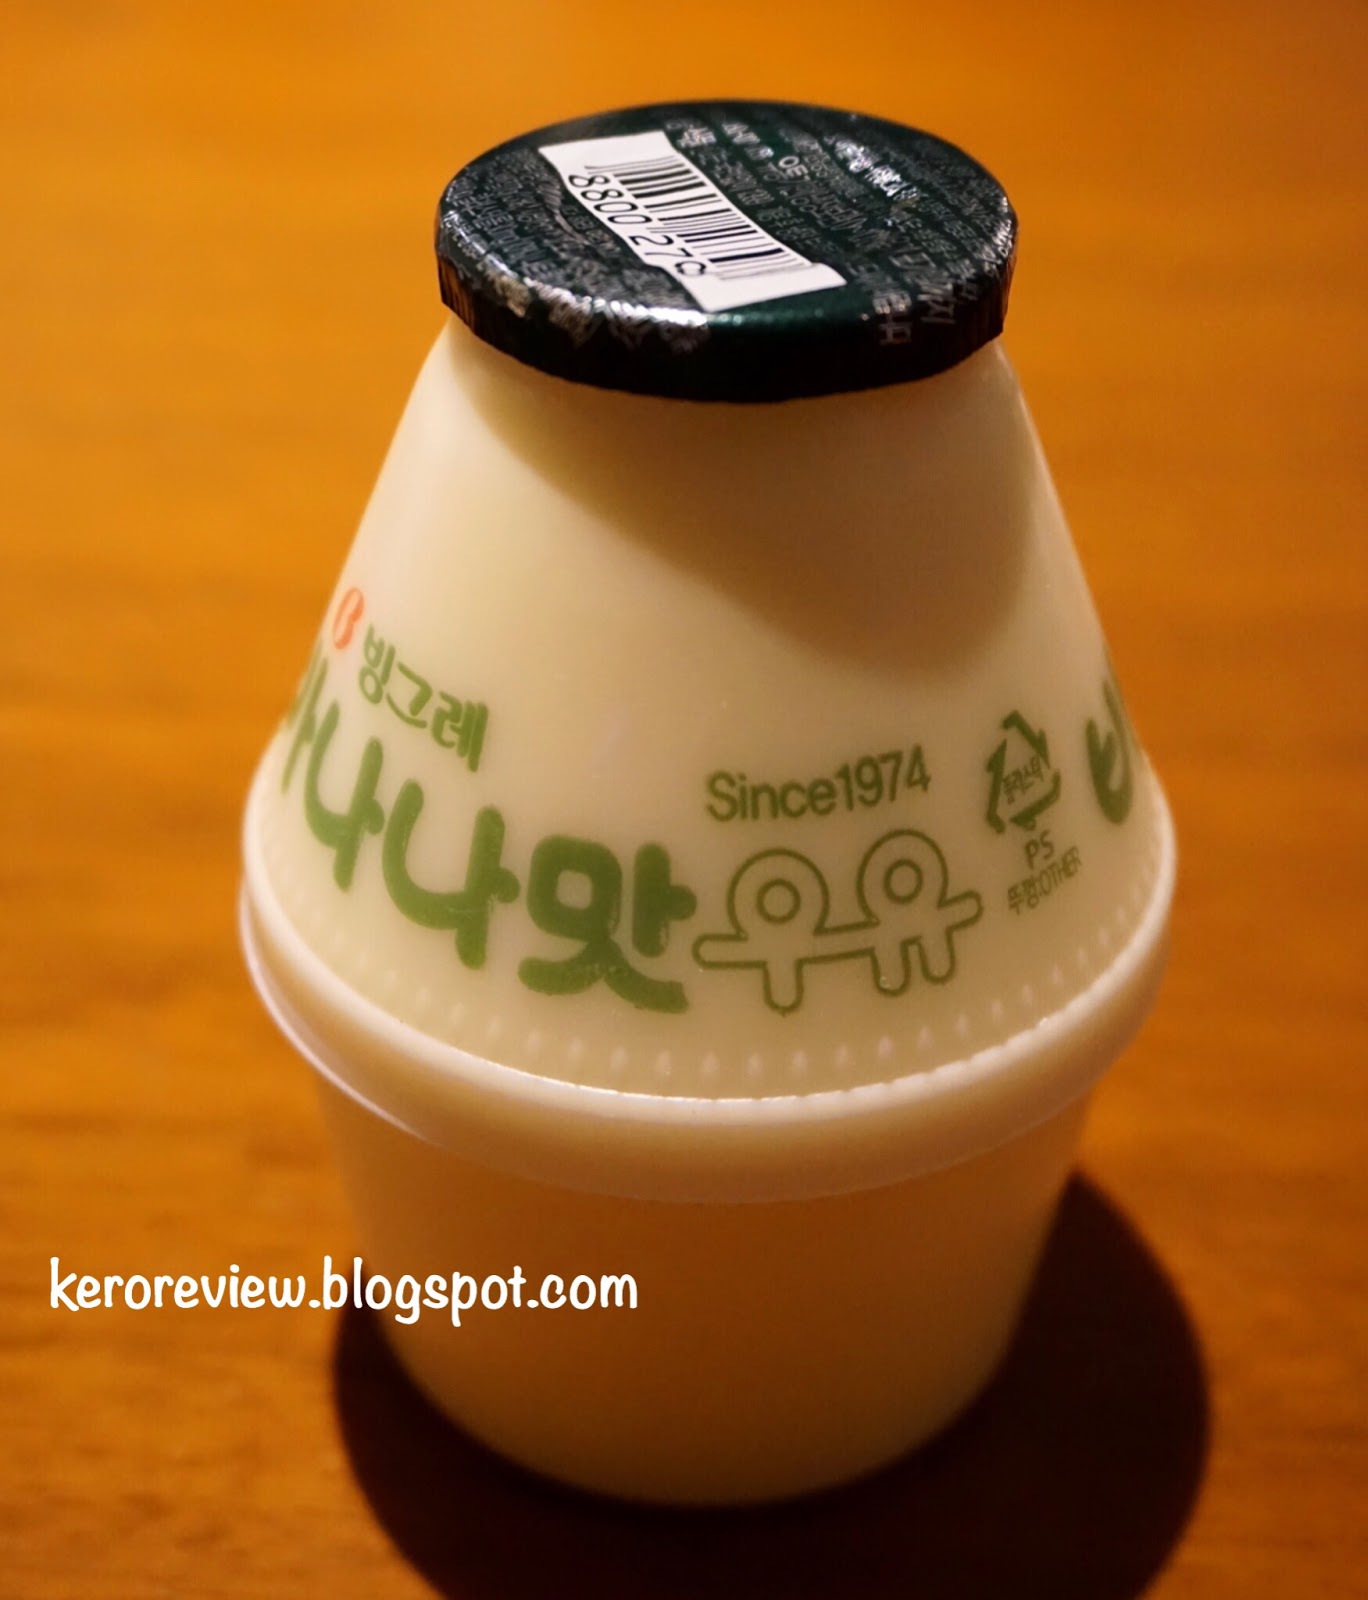 รีวิว บิงกือเร นมกล้วยเกาหลี นมพาสเจอร์ไรซ์ รสกล้วย (CR) Review Korean Banana Flavored Pasteurized Milk, Binggrae Brand.